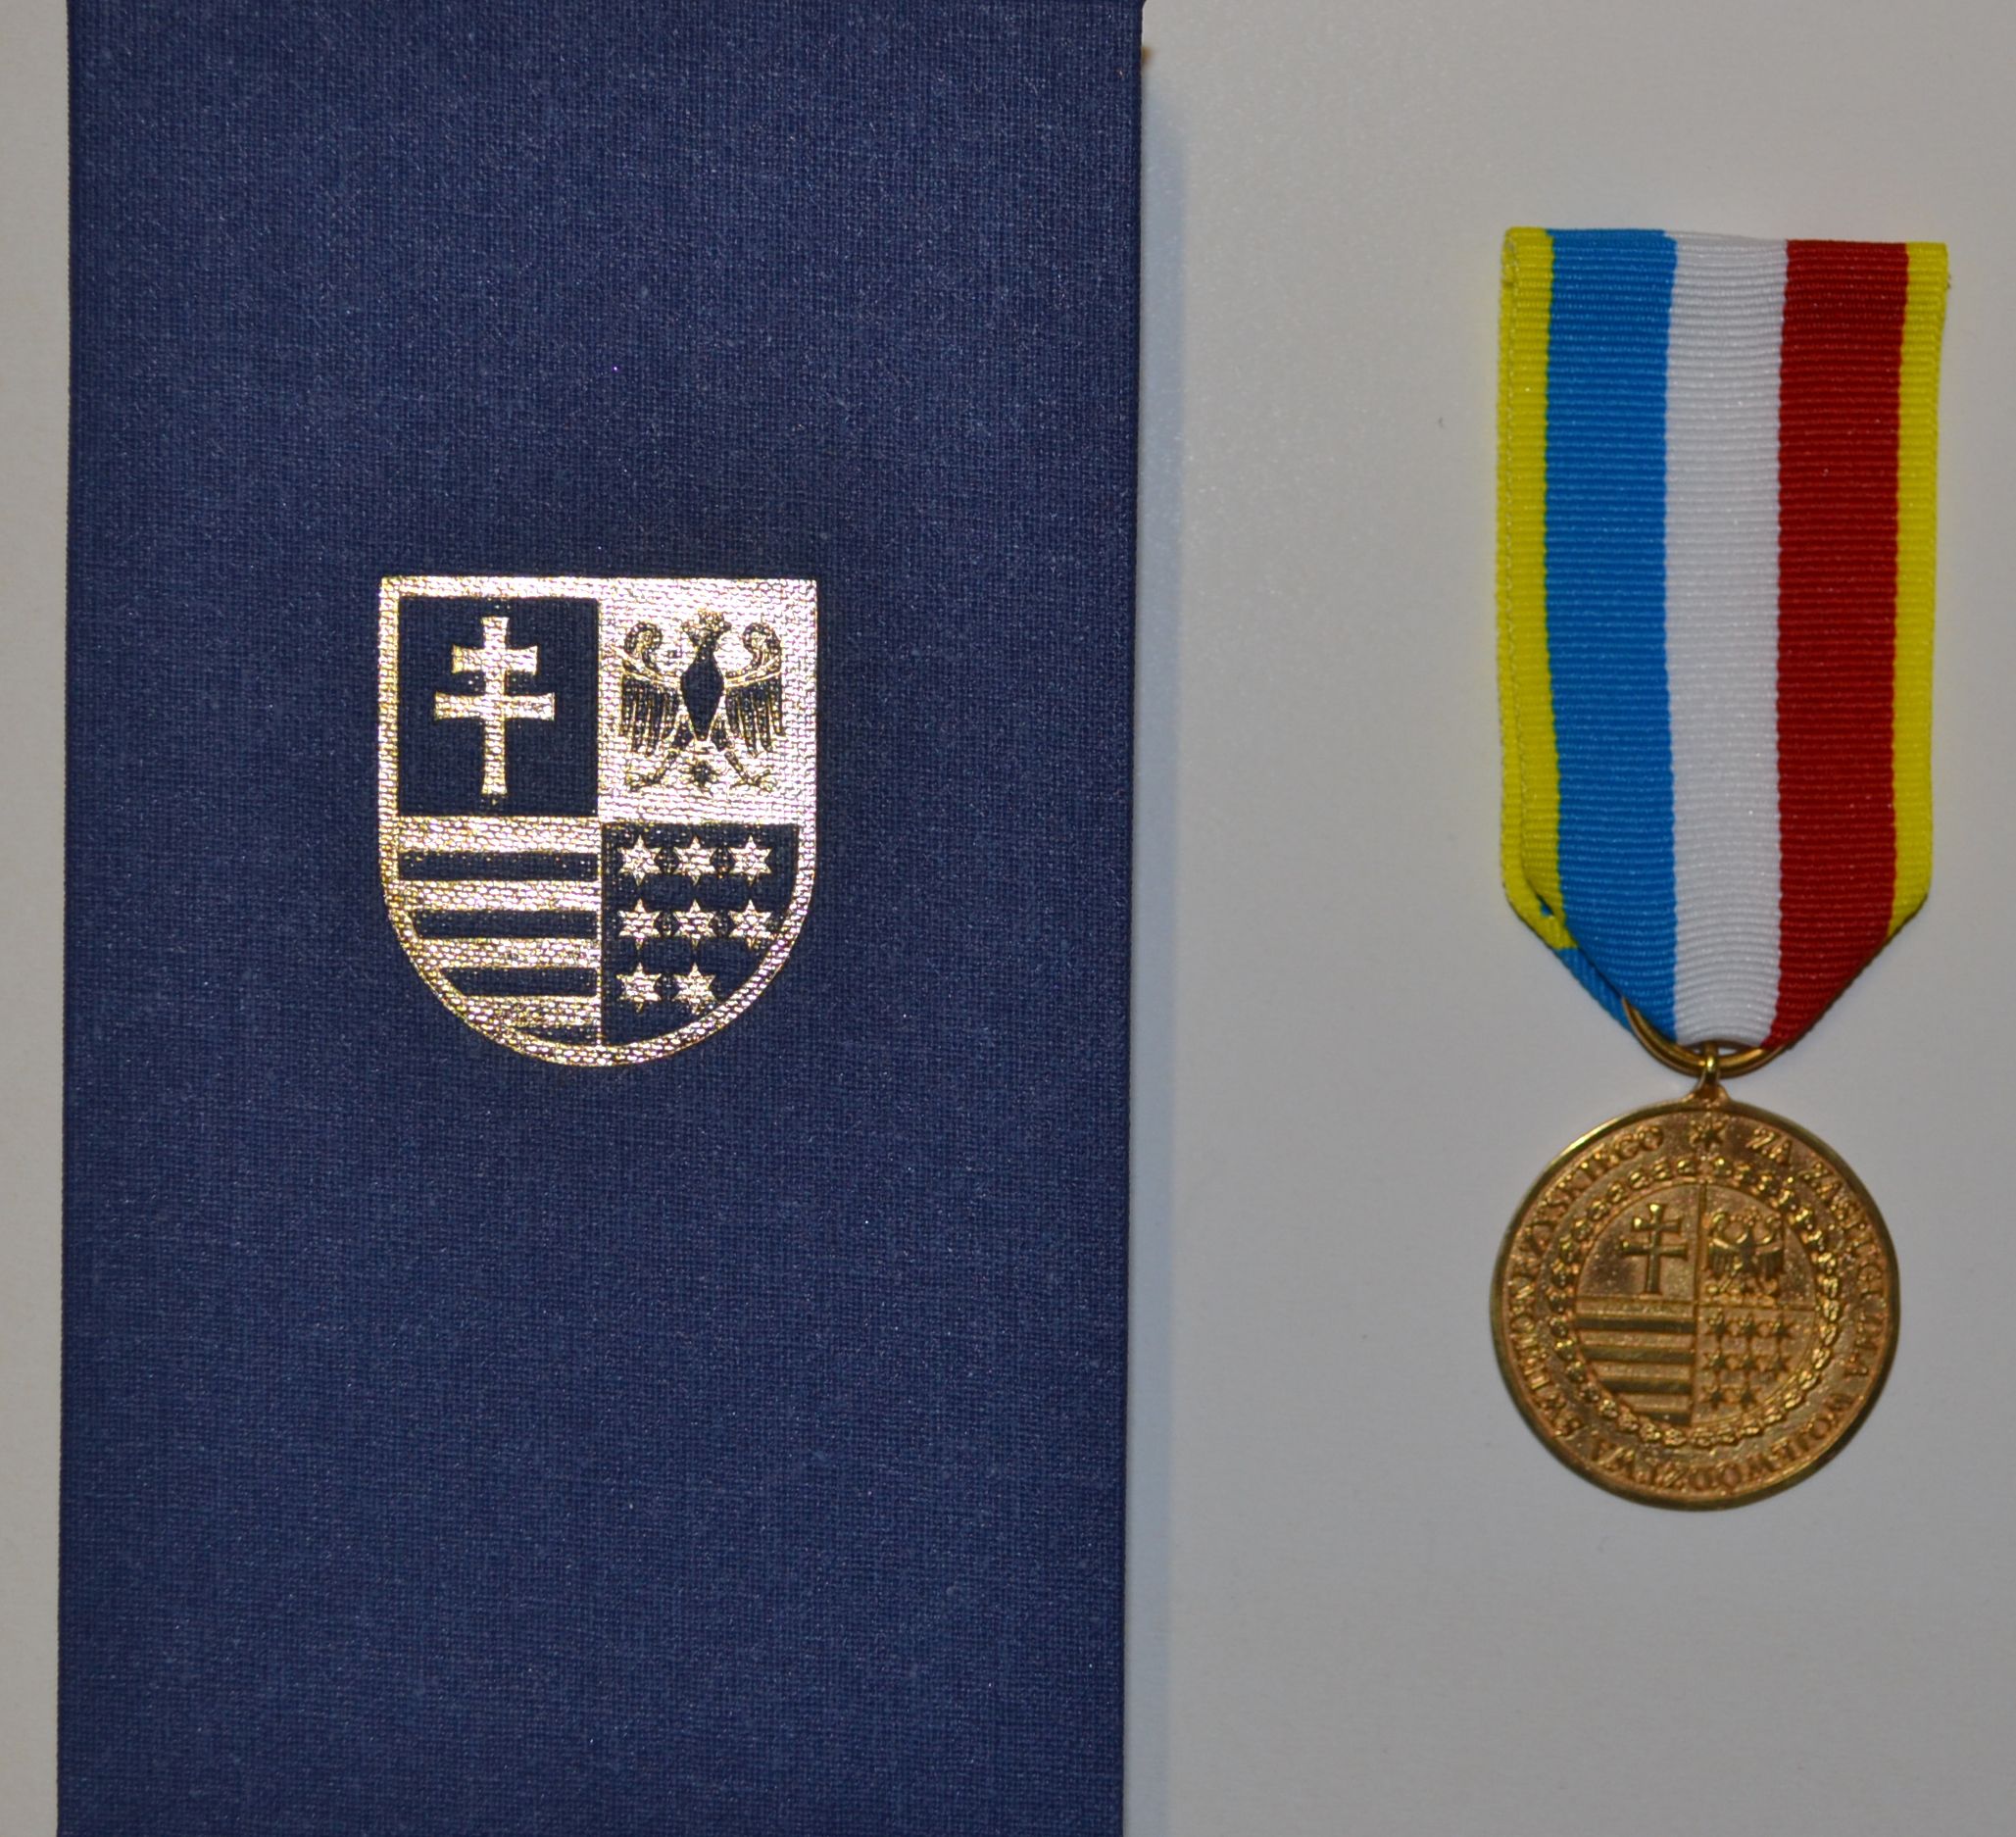 Pedagogiczna Biblioteka Wojewódzka otrzymała Odznakę Honorową Województwa Świętokrzyskiego